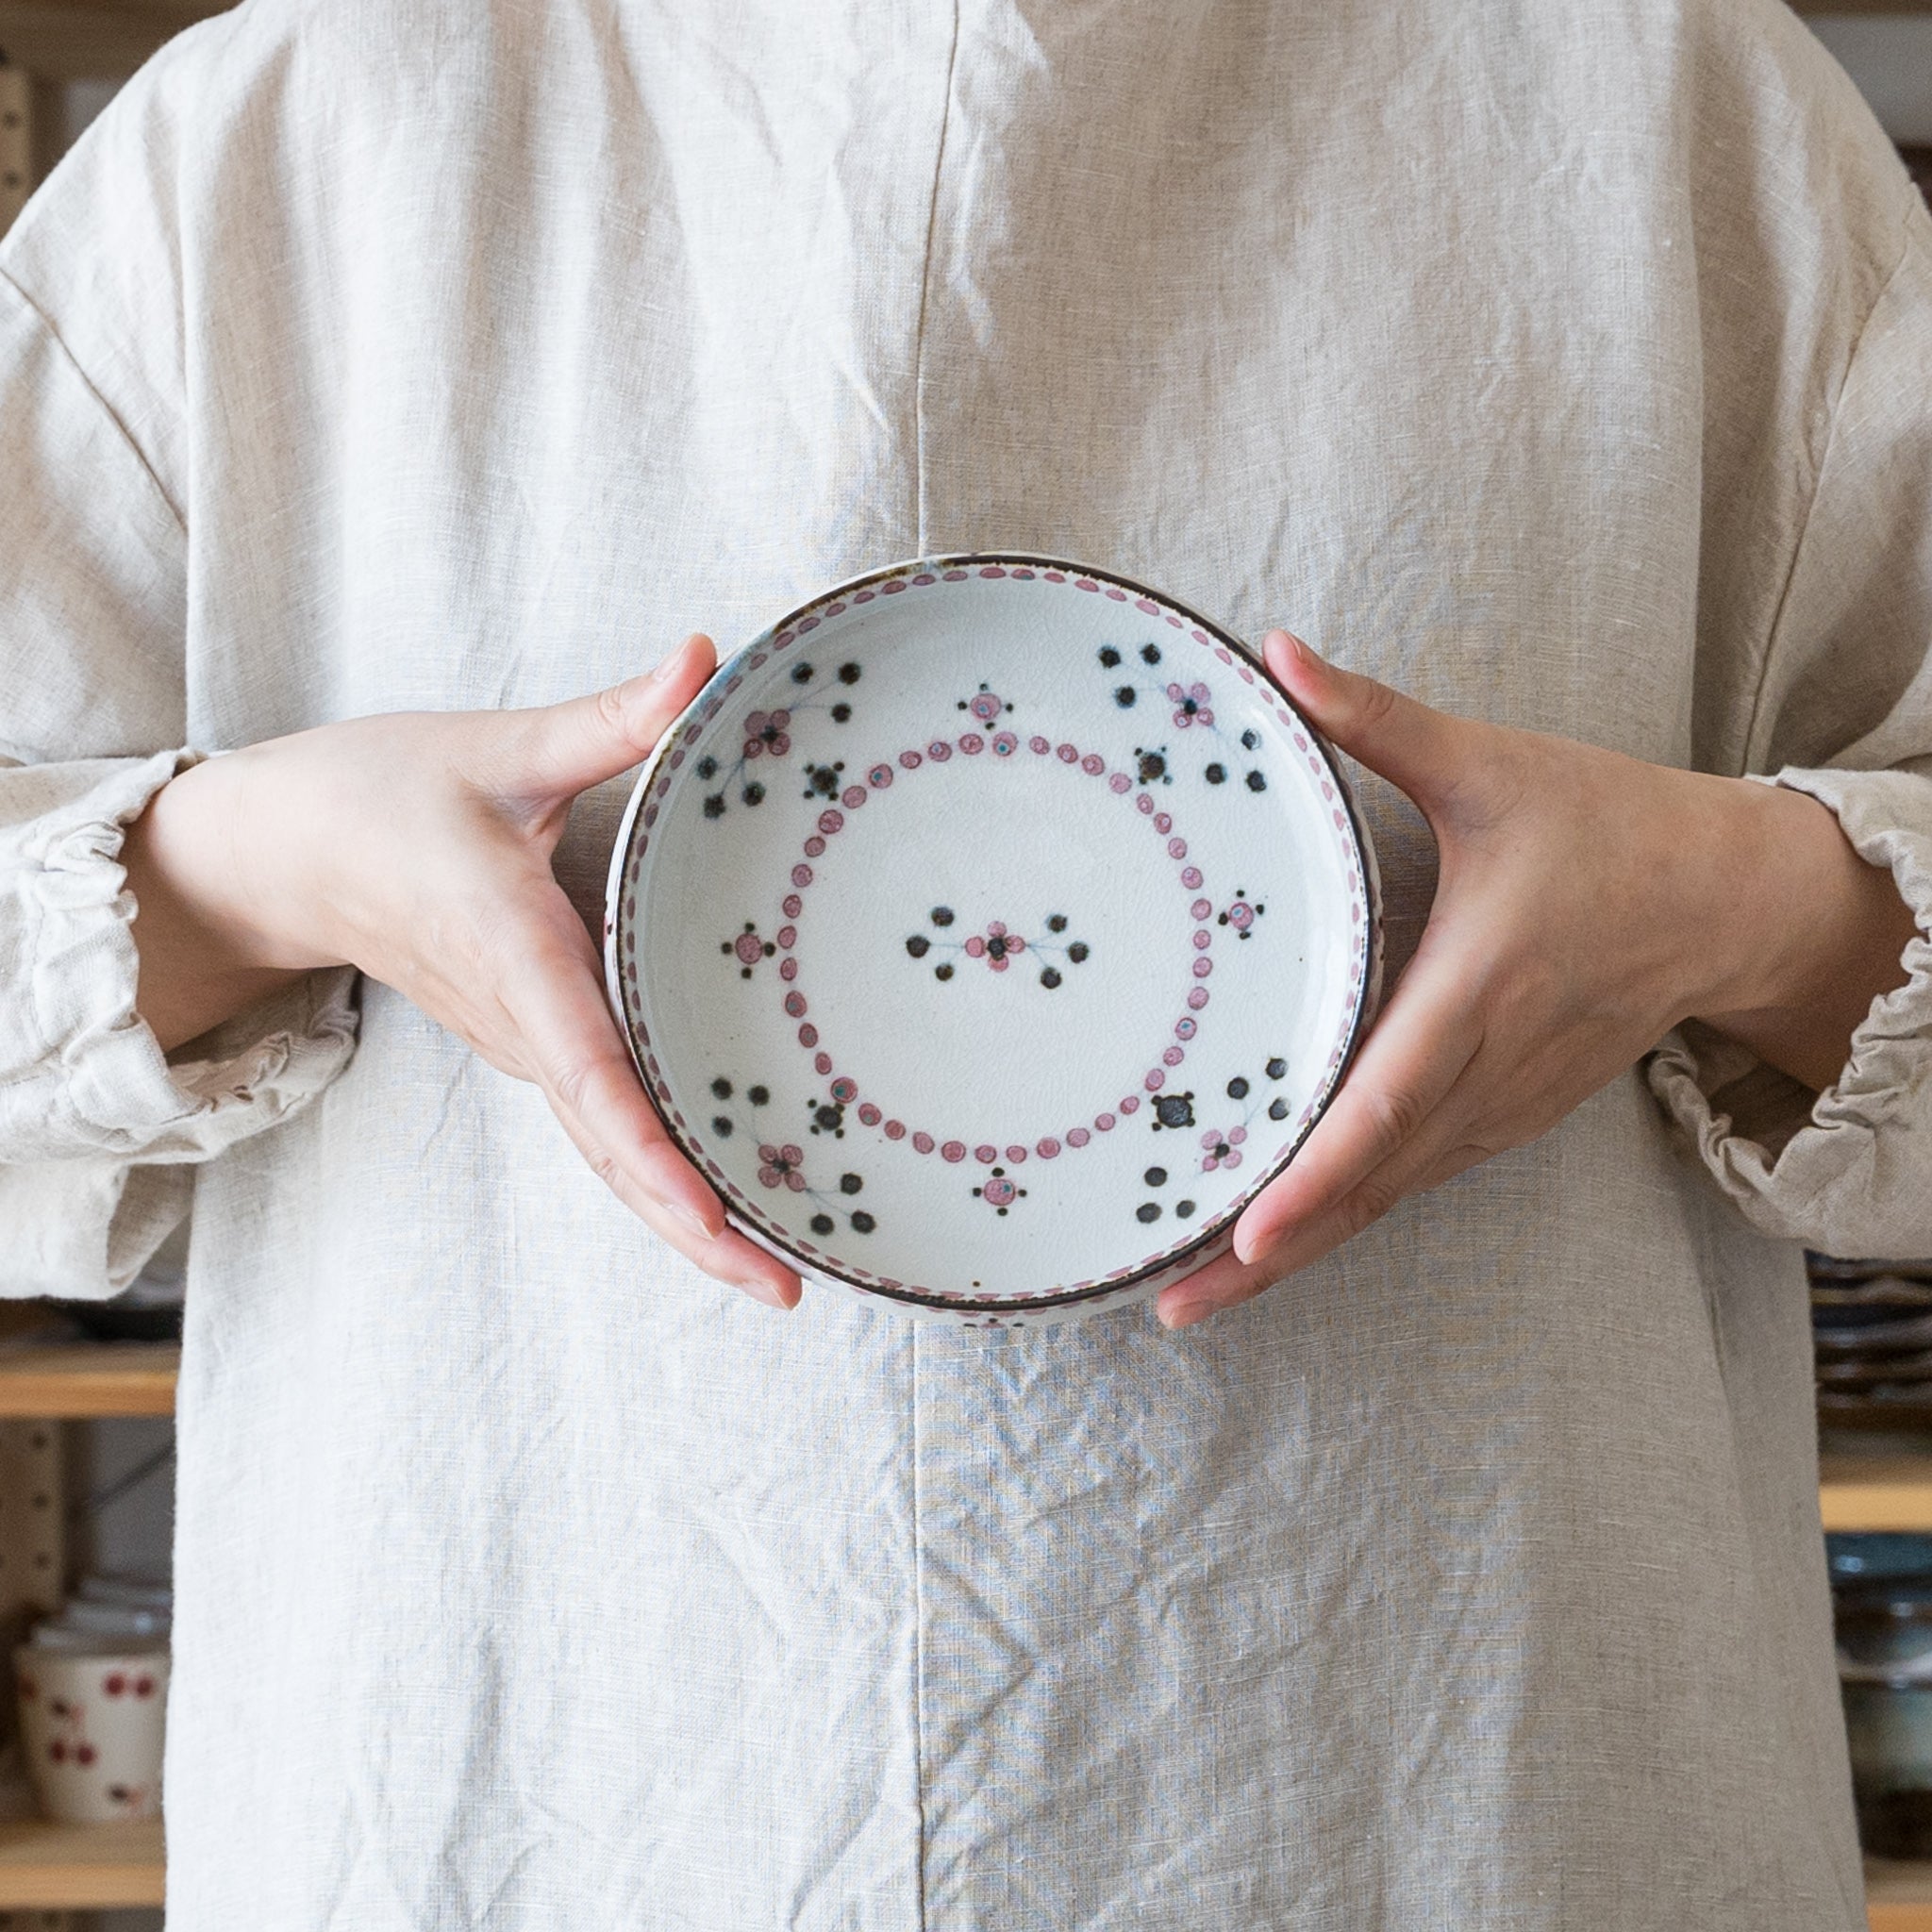 汁気のあるおかずの盛り付けにぴったりな陶彩窯の5寸深皿